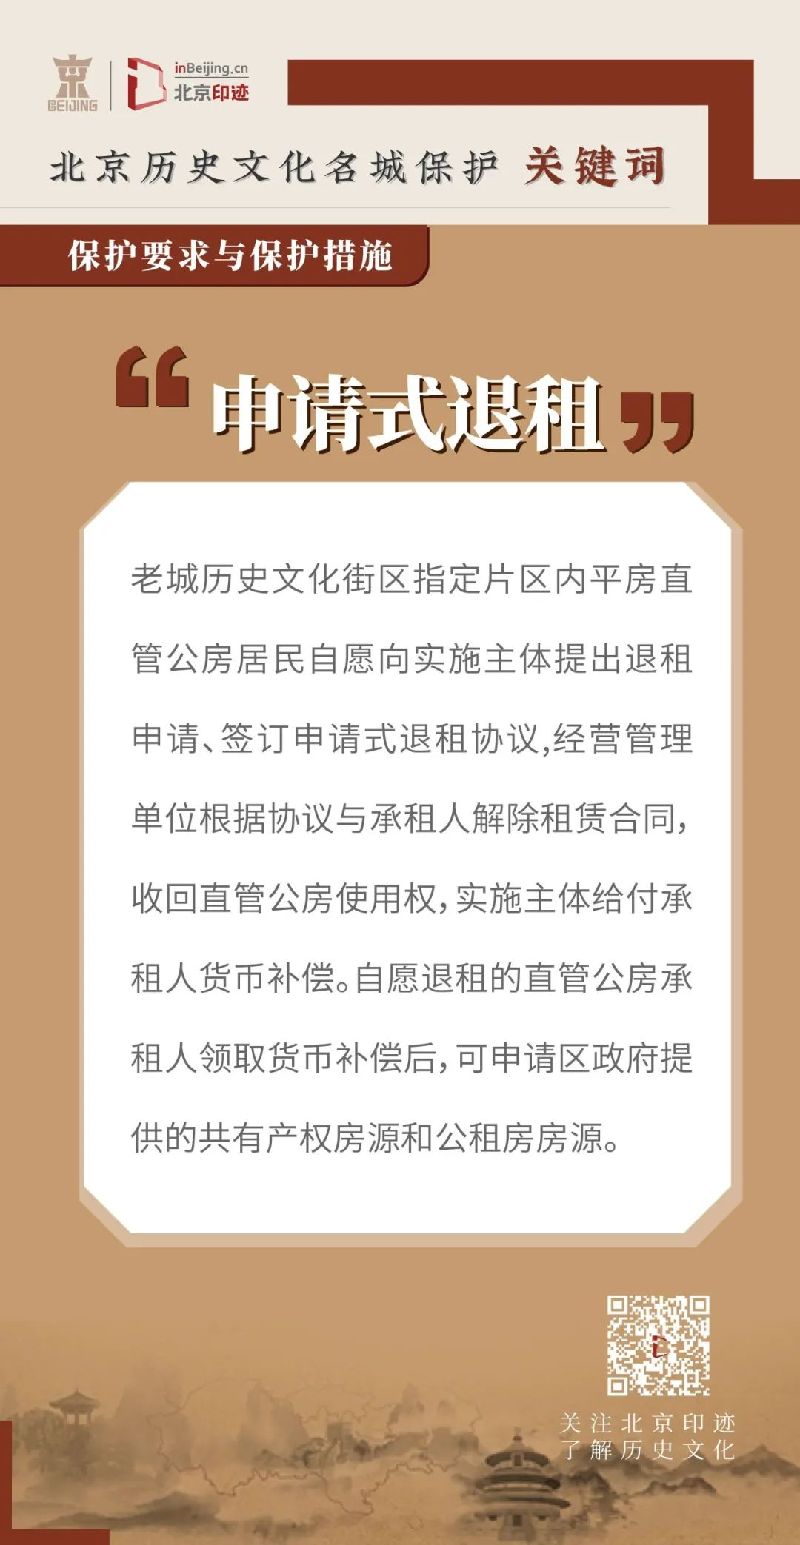 北京历史文化名城保护关键词丨历史文化街区平房直管公房改善居住条件的创新路径